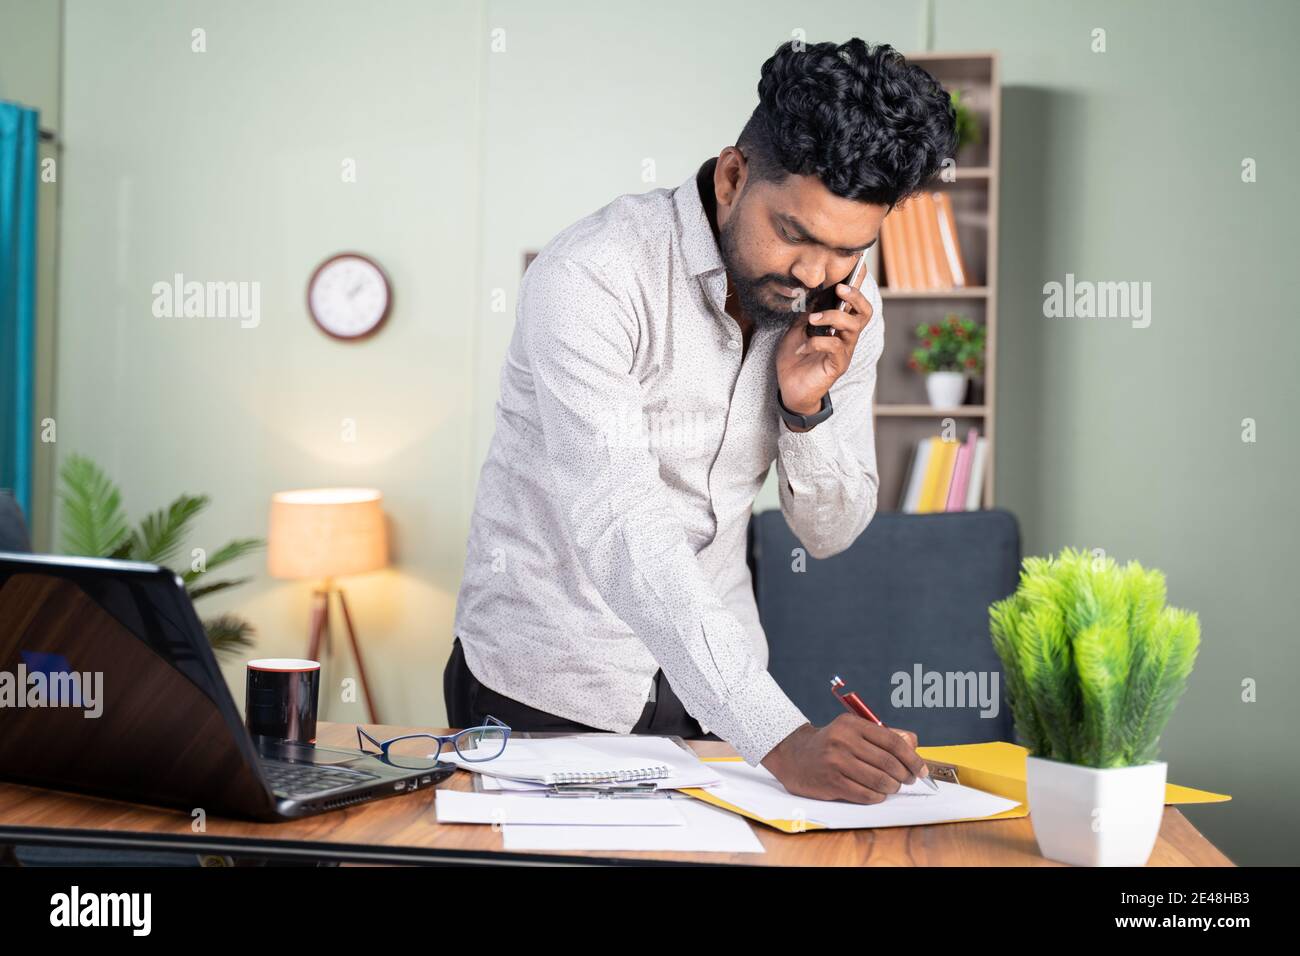 Jeune homme debout occupé à prendre des notes tout en parlant sur un téléphone mobile devant le bureau de travail - concept de l'appel d'affaires, parler avec les clients notant le faire Banque D'Images